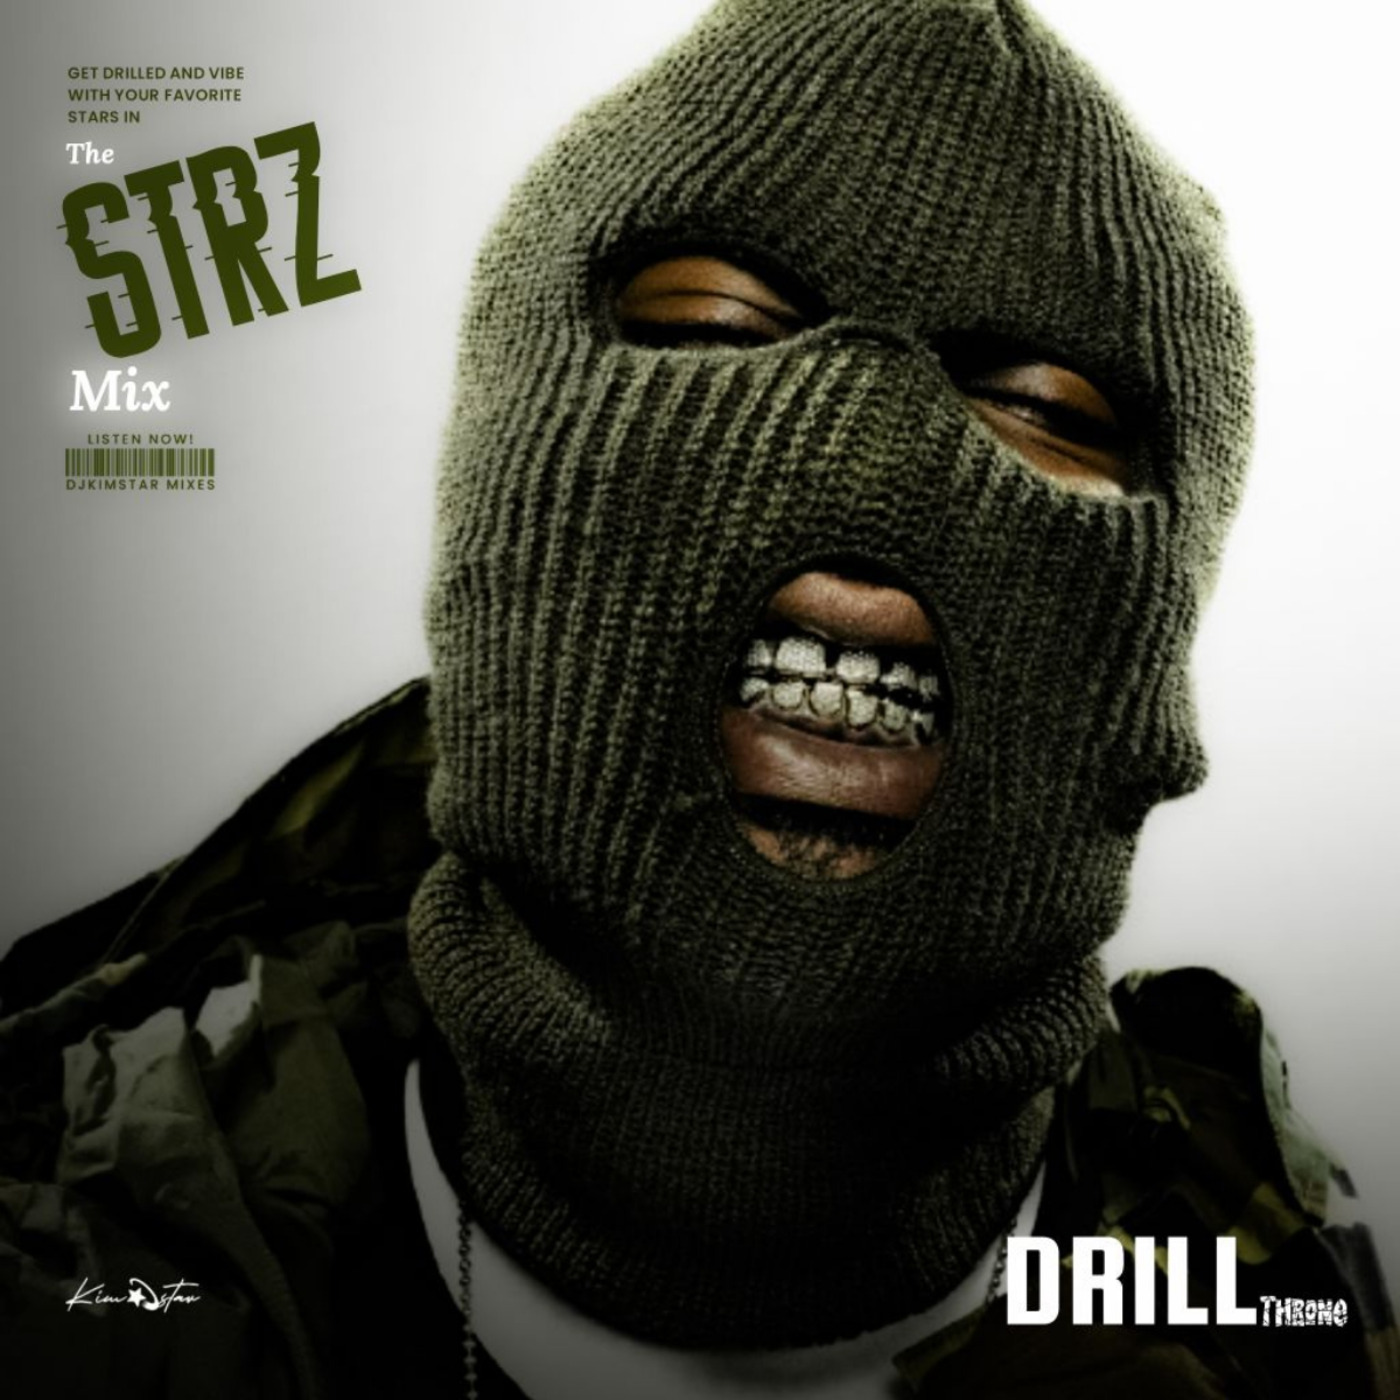 #DRILL strz mix series - Drill mix